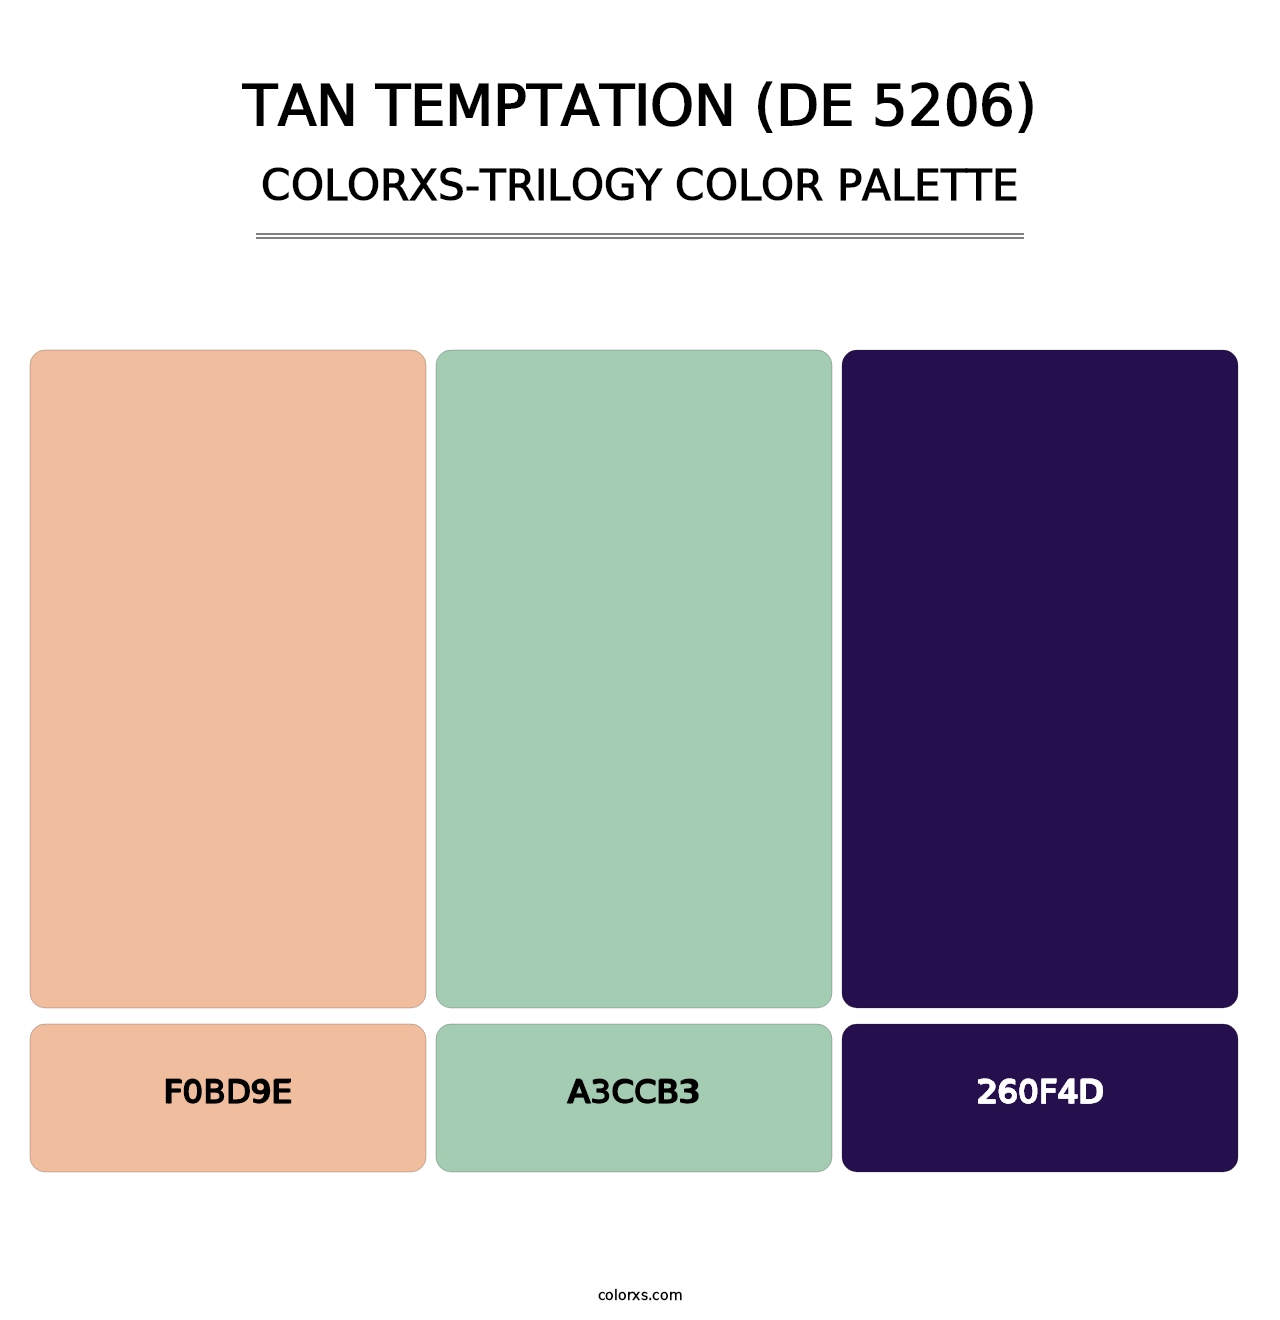 Tan Temptation (DE 5206) - Colorxs Trilogy Palette